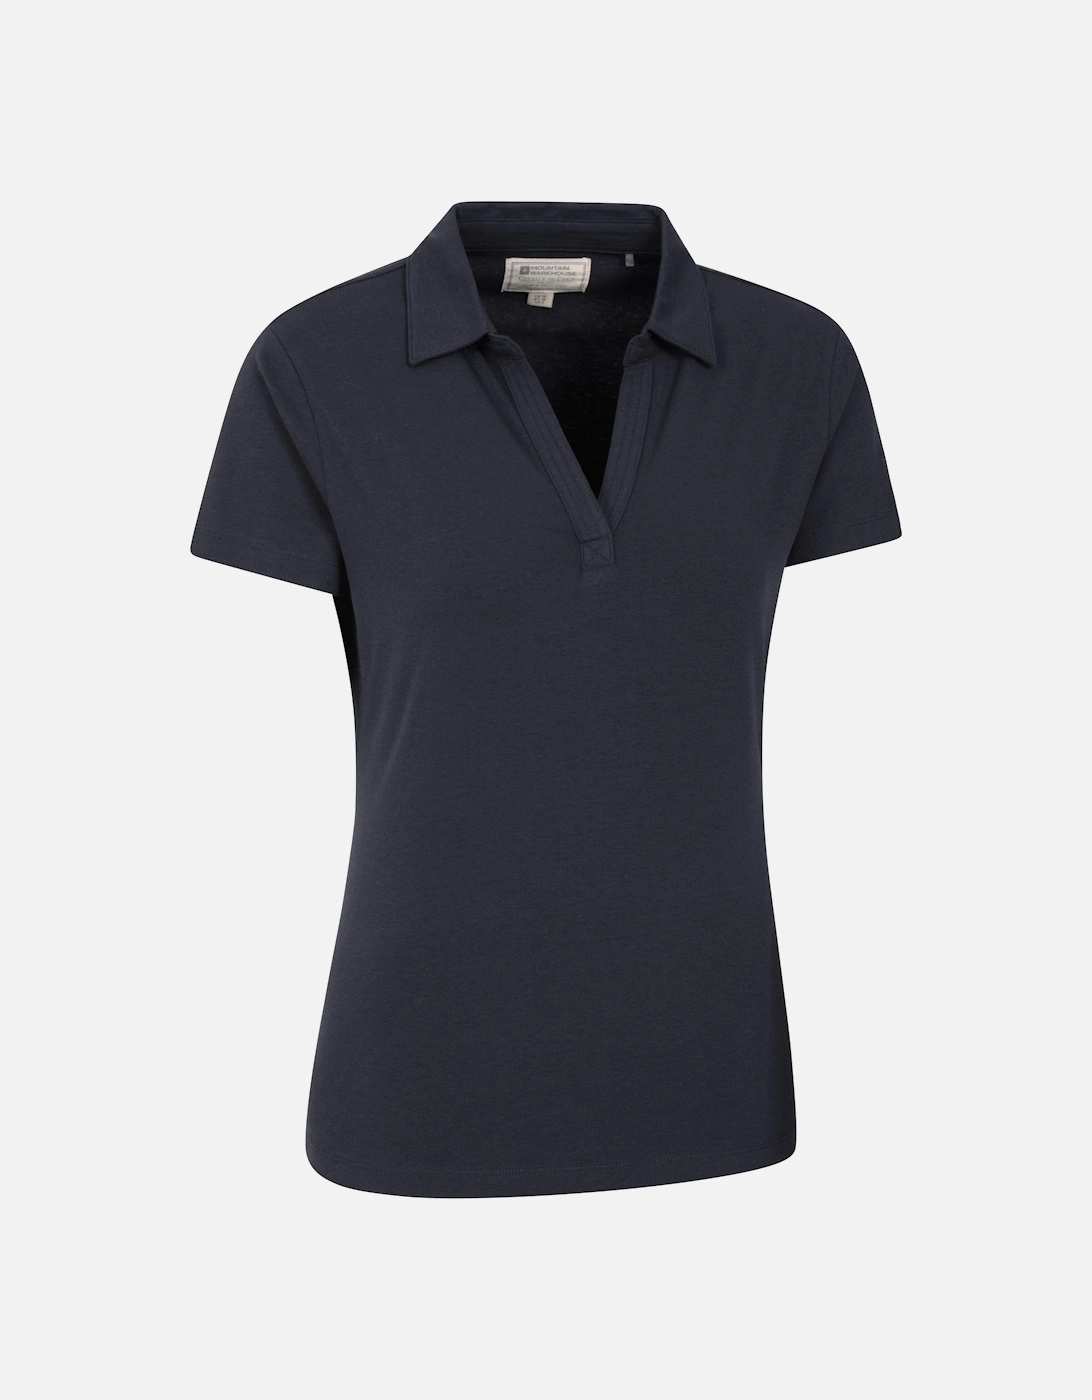 Womens/Ladies UV Protection Polo Shirt